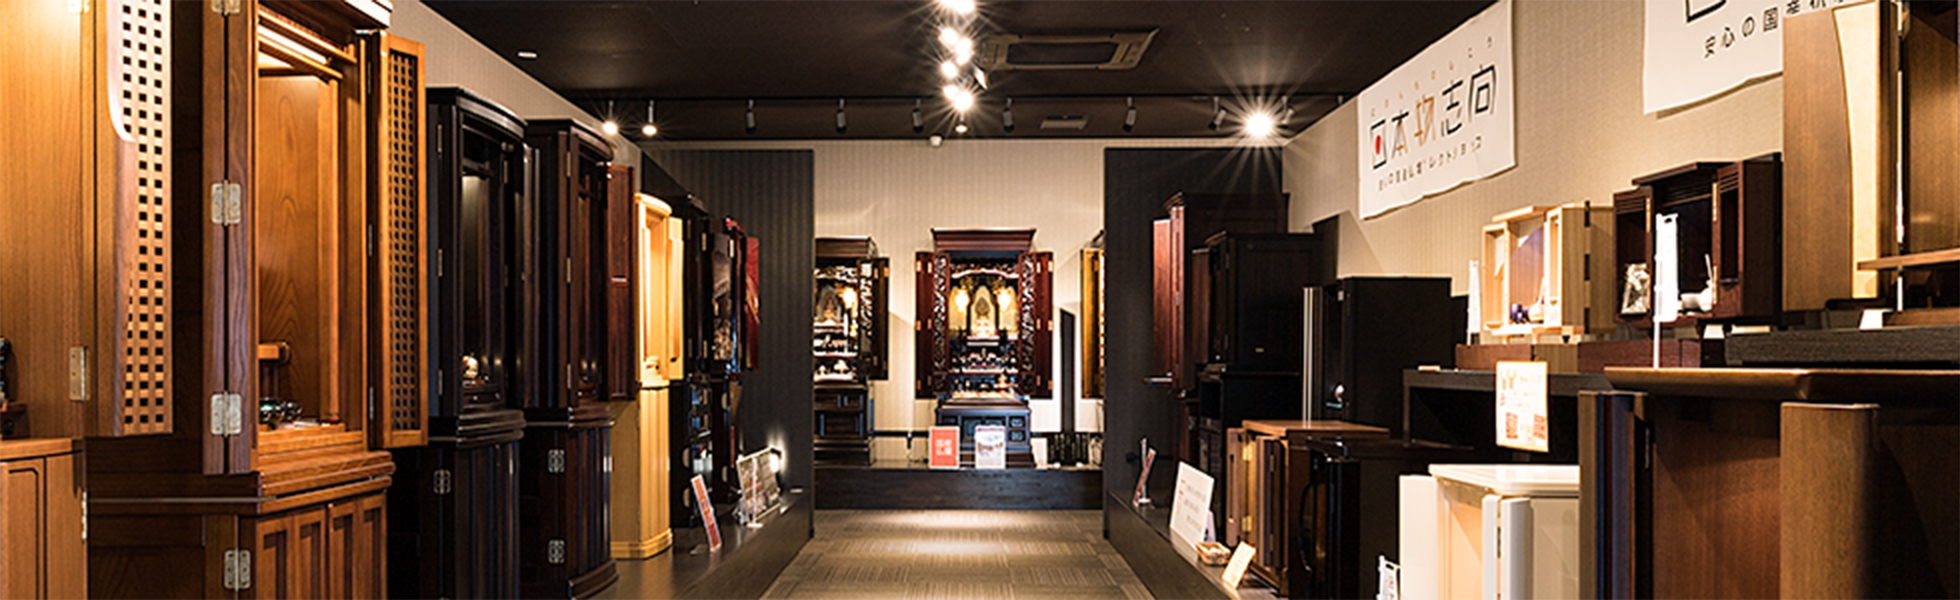 小野石材店は良質な国産仏壇を扱う専門店、「日本物志向」認定店です。